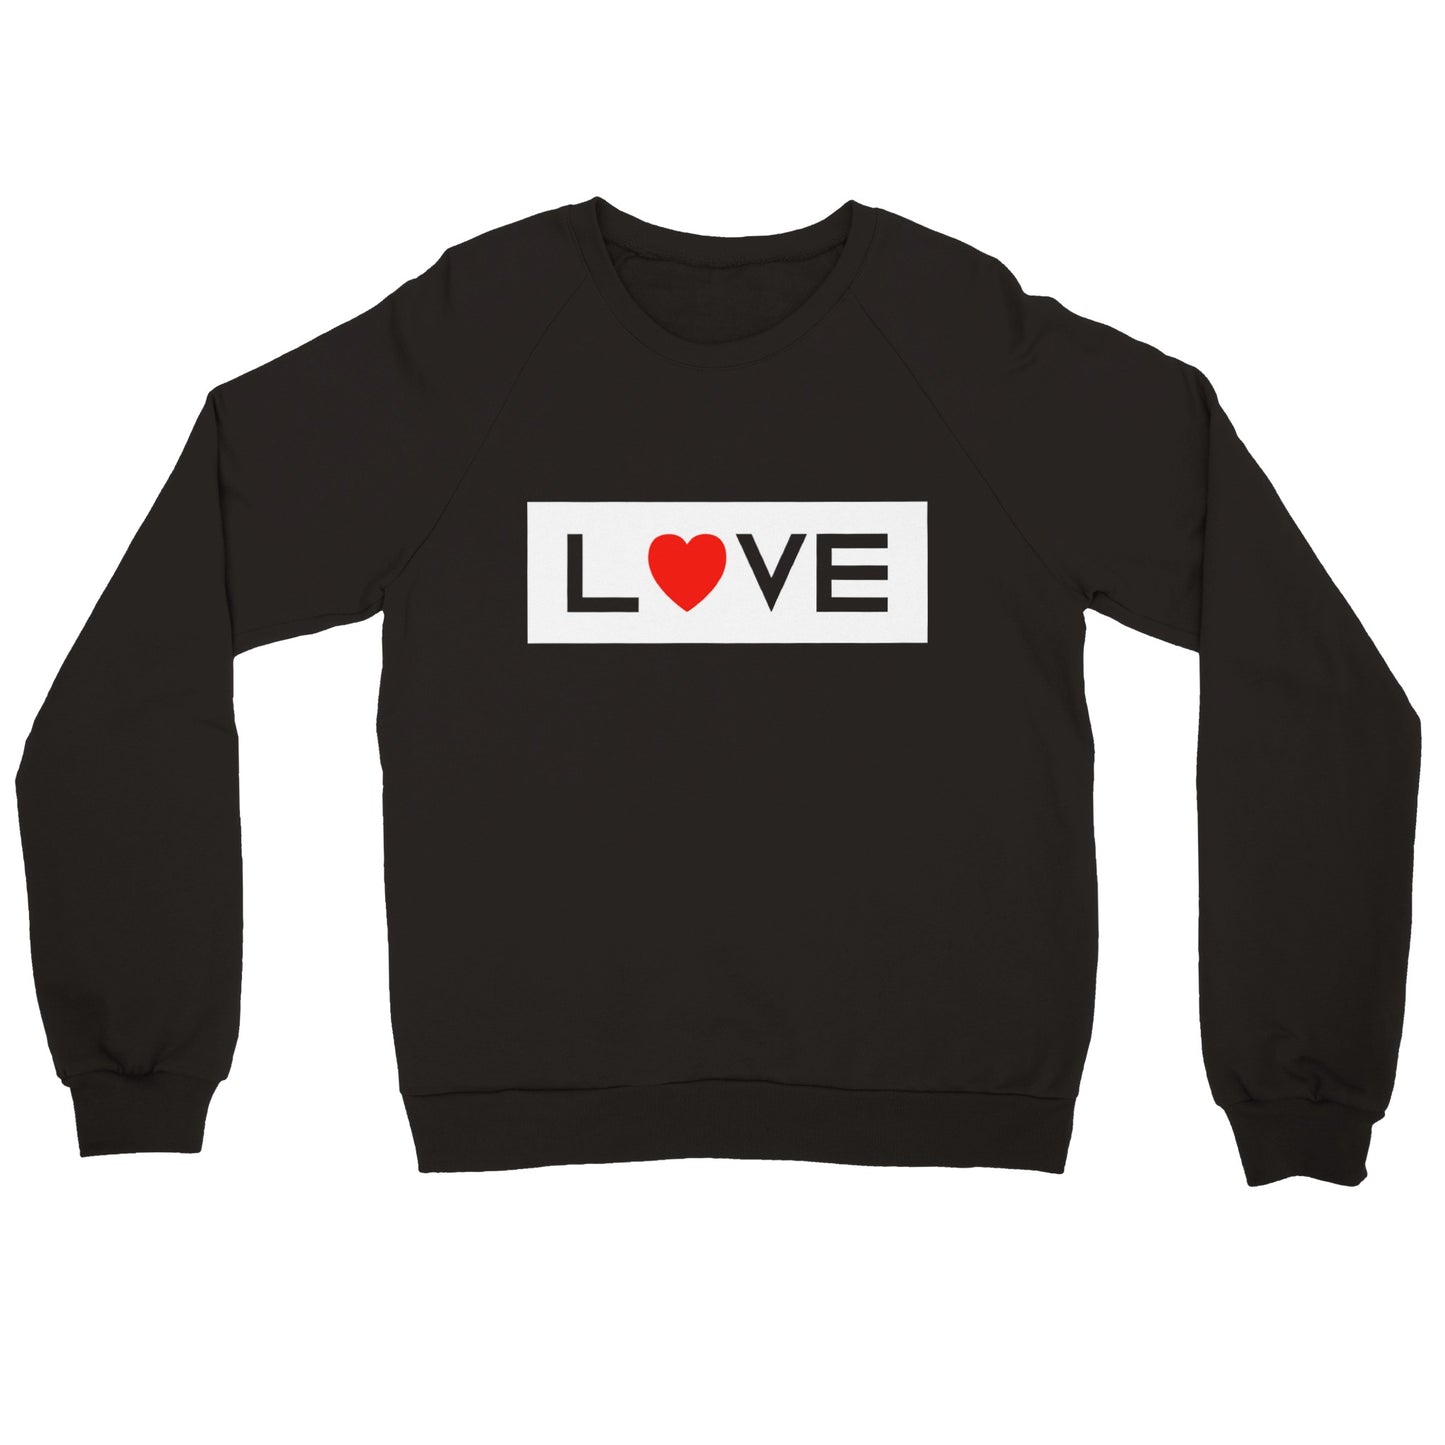 Inverse Love Sweatshirt Men's